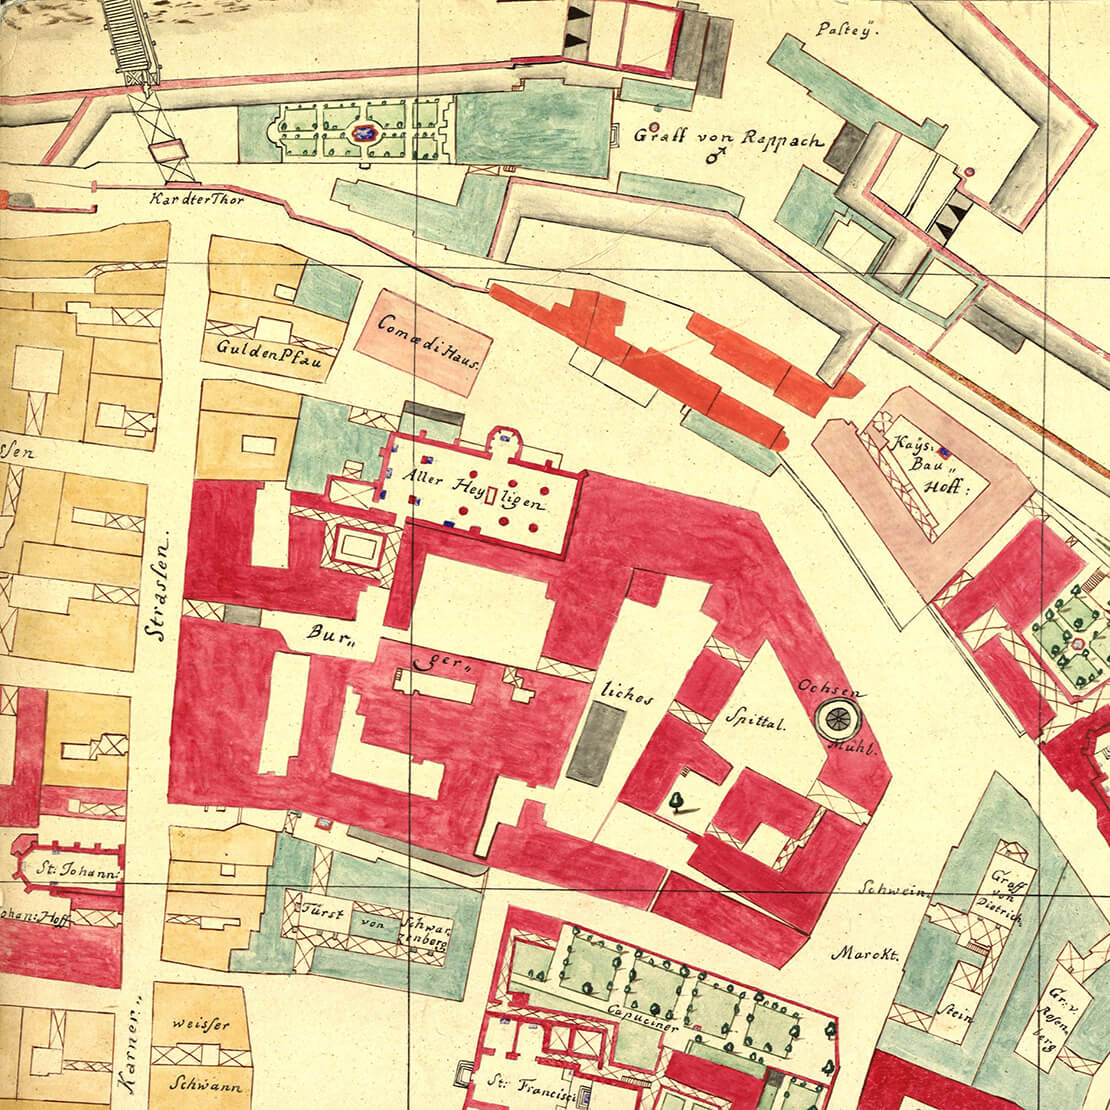 Bürgerspital (roter Komplex) auf einem Ausschnitt aus dem gesüdeten Stadtplan von Werner Arnold Steinhausen, 1710 (Reproduktion 1847), WStLA, Pläne und Karten: Sammelbestand, P1: 234 